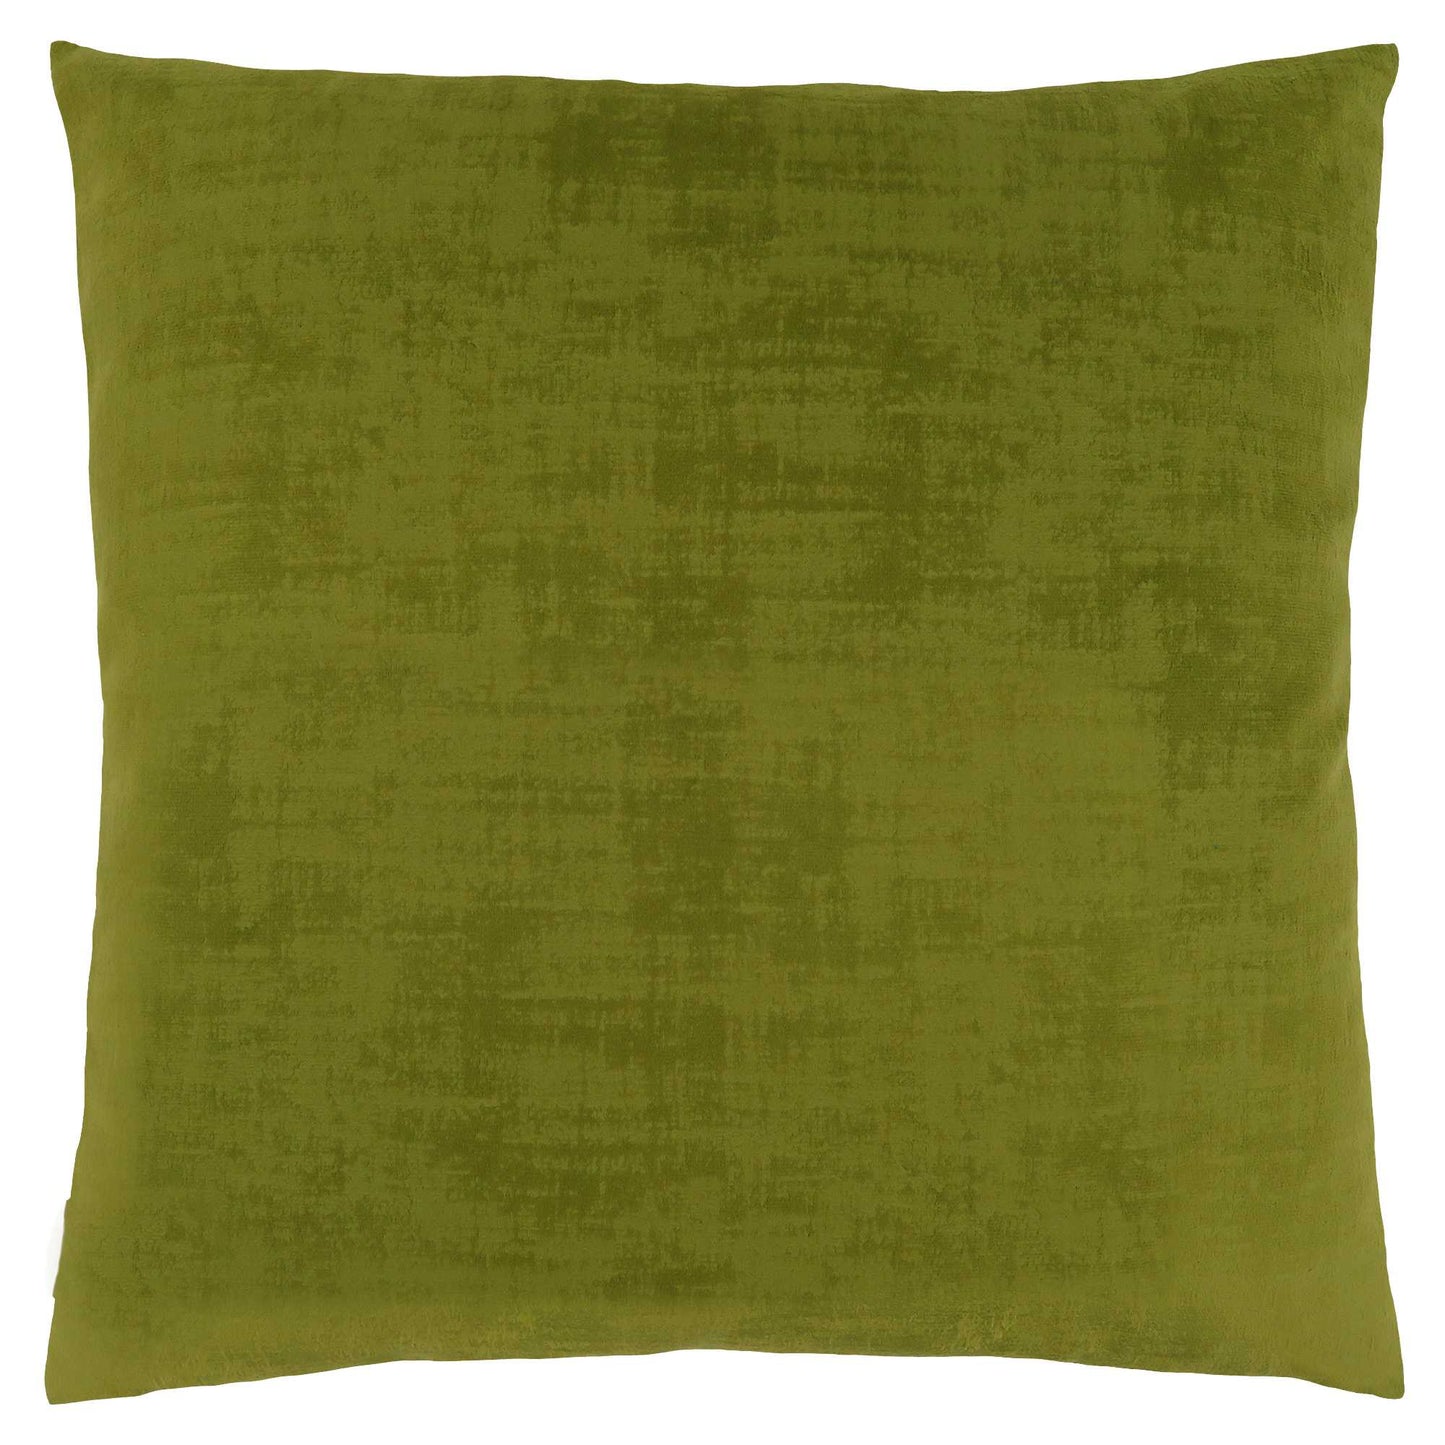 18" X 18" Lime Green Brushed Velvet Polyester Zippered Pillow